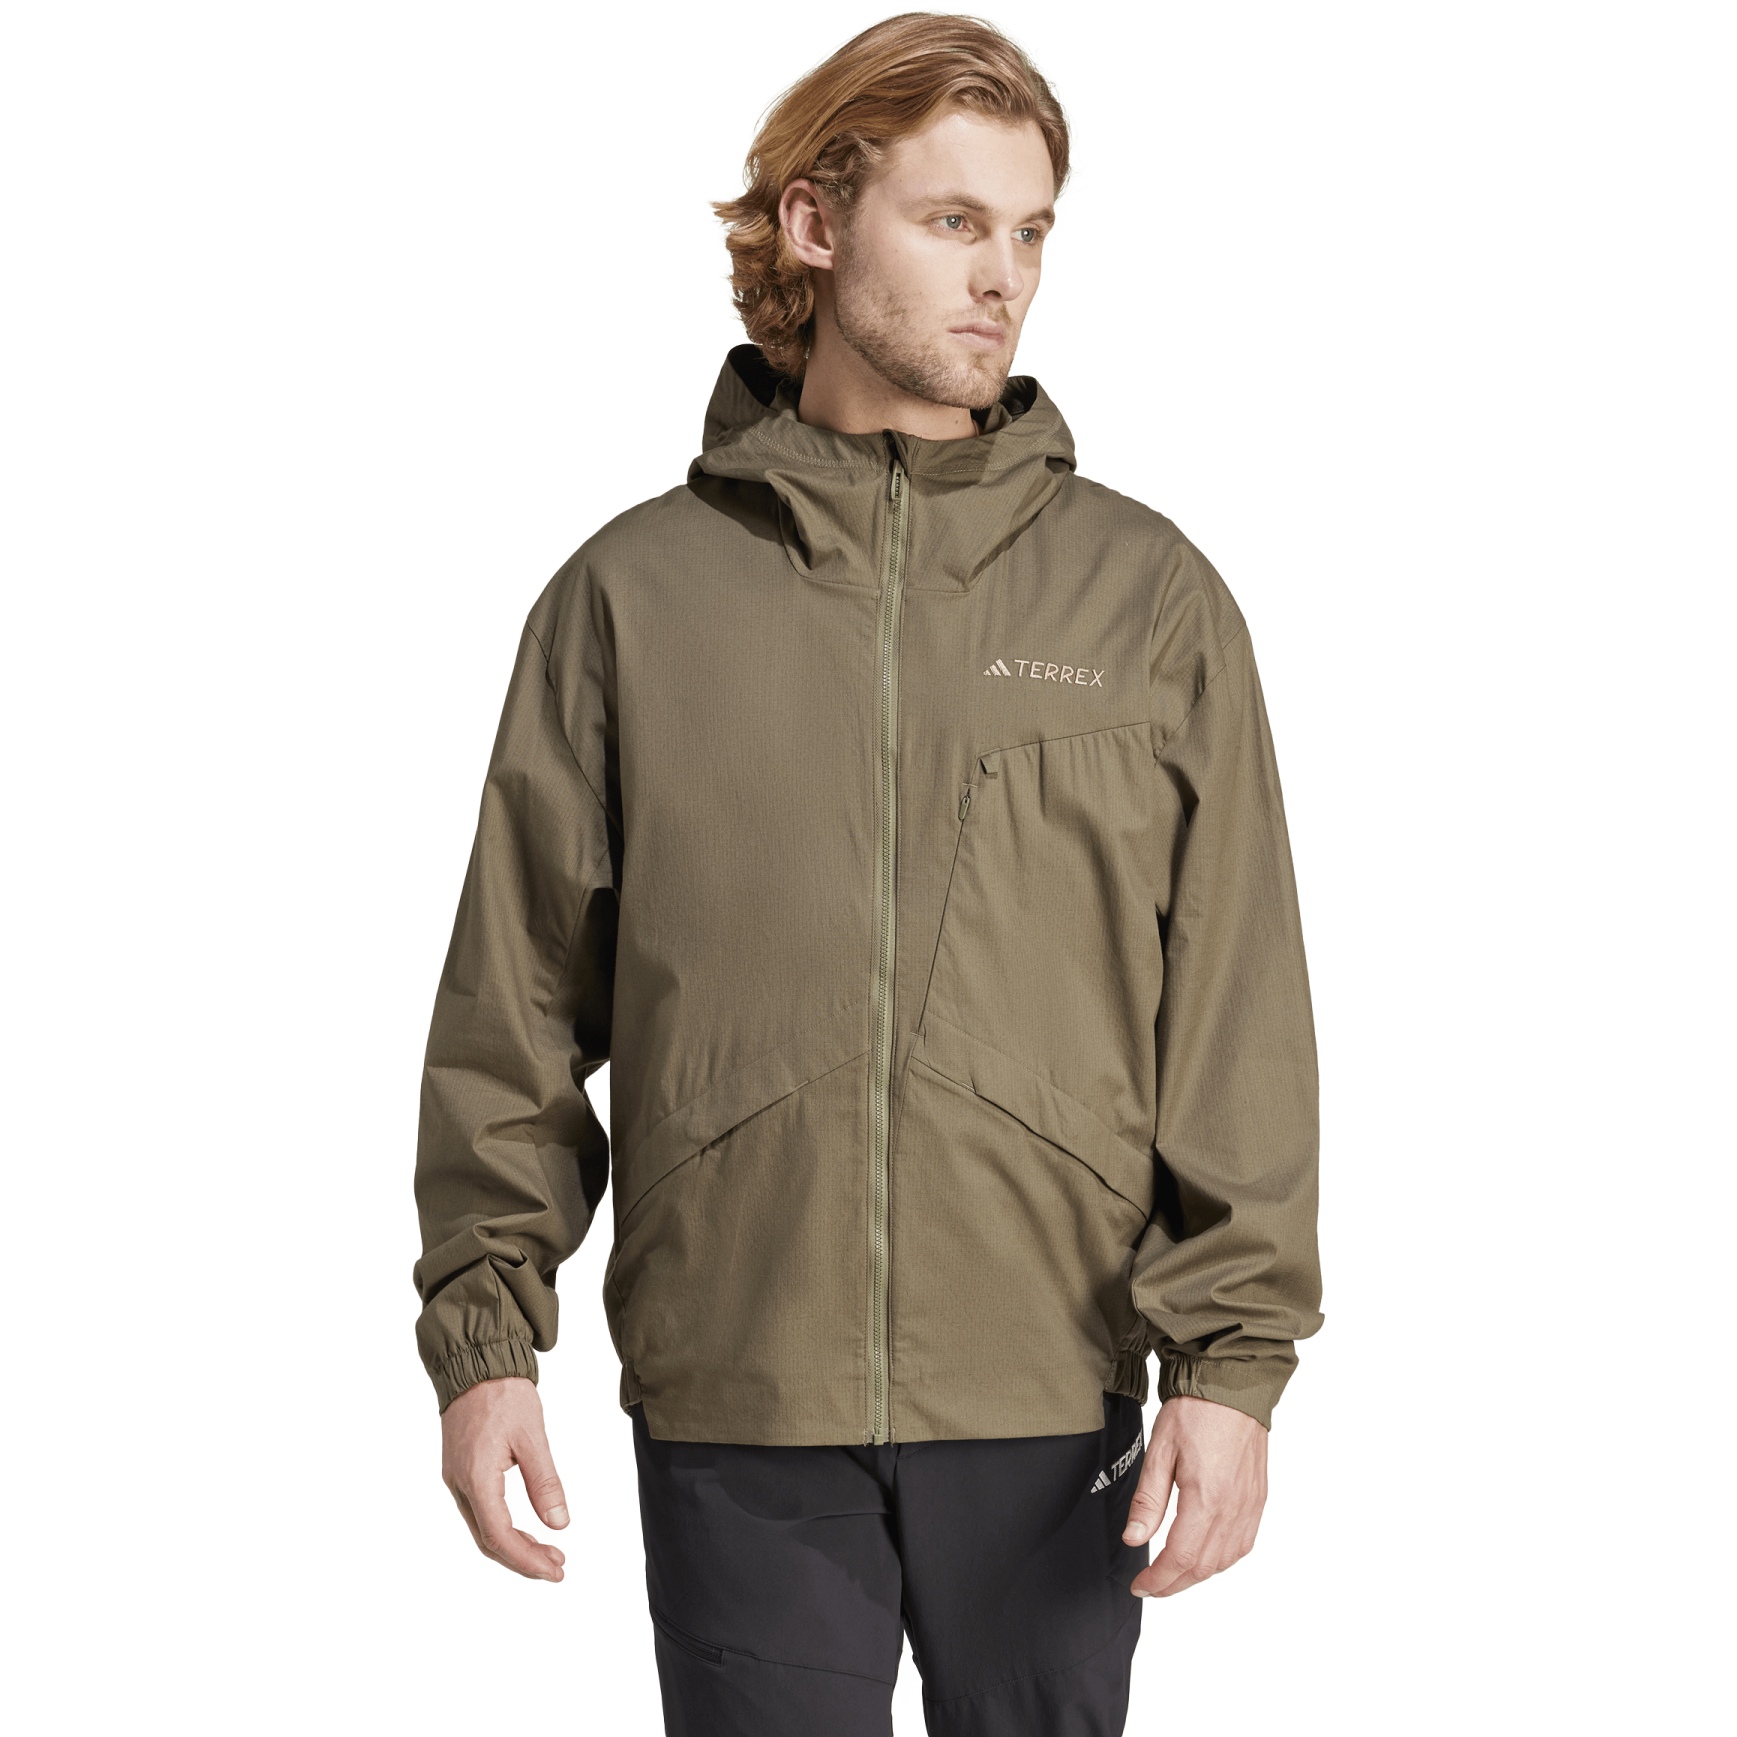 Produktbild von adidas Xploric Wind Jacket Men - olive strata IN4630